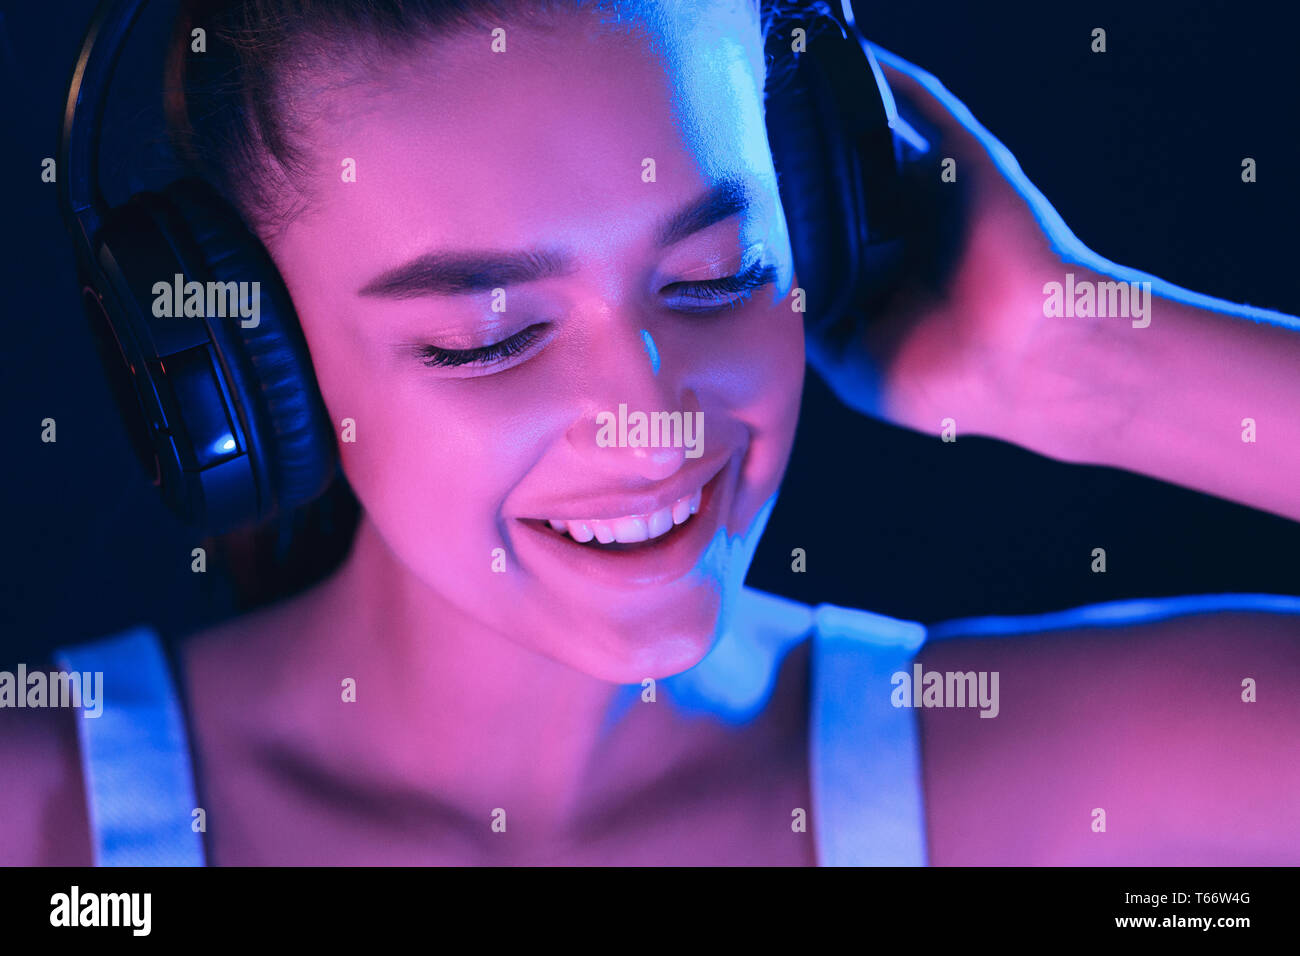 DJ im Club. Frau in Headset Musik hören, mit Neonlicht beleuchtet Stockfoto